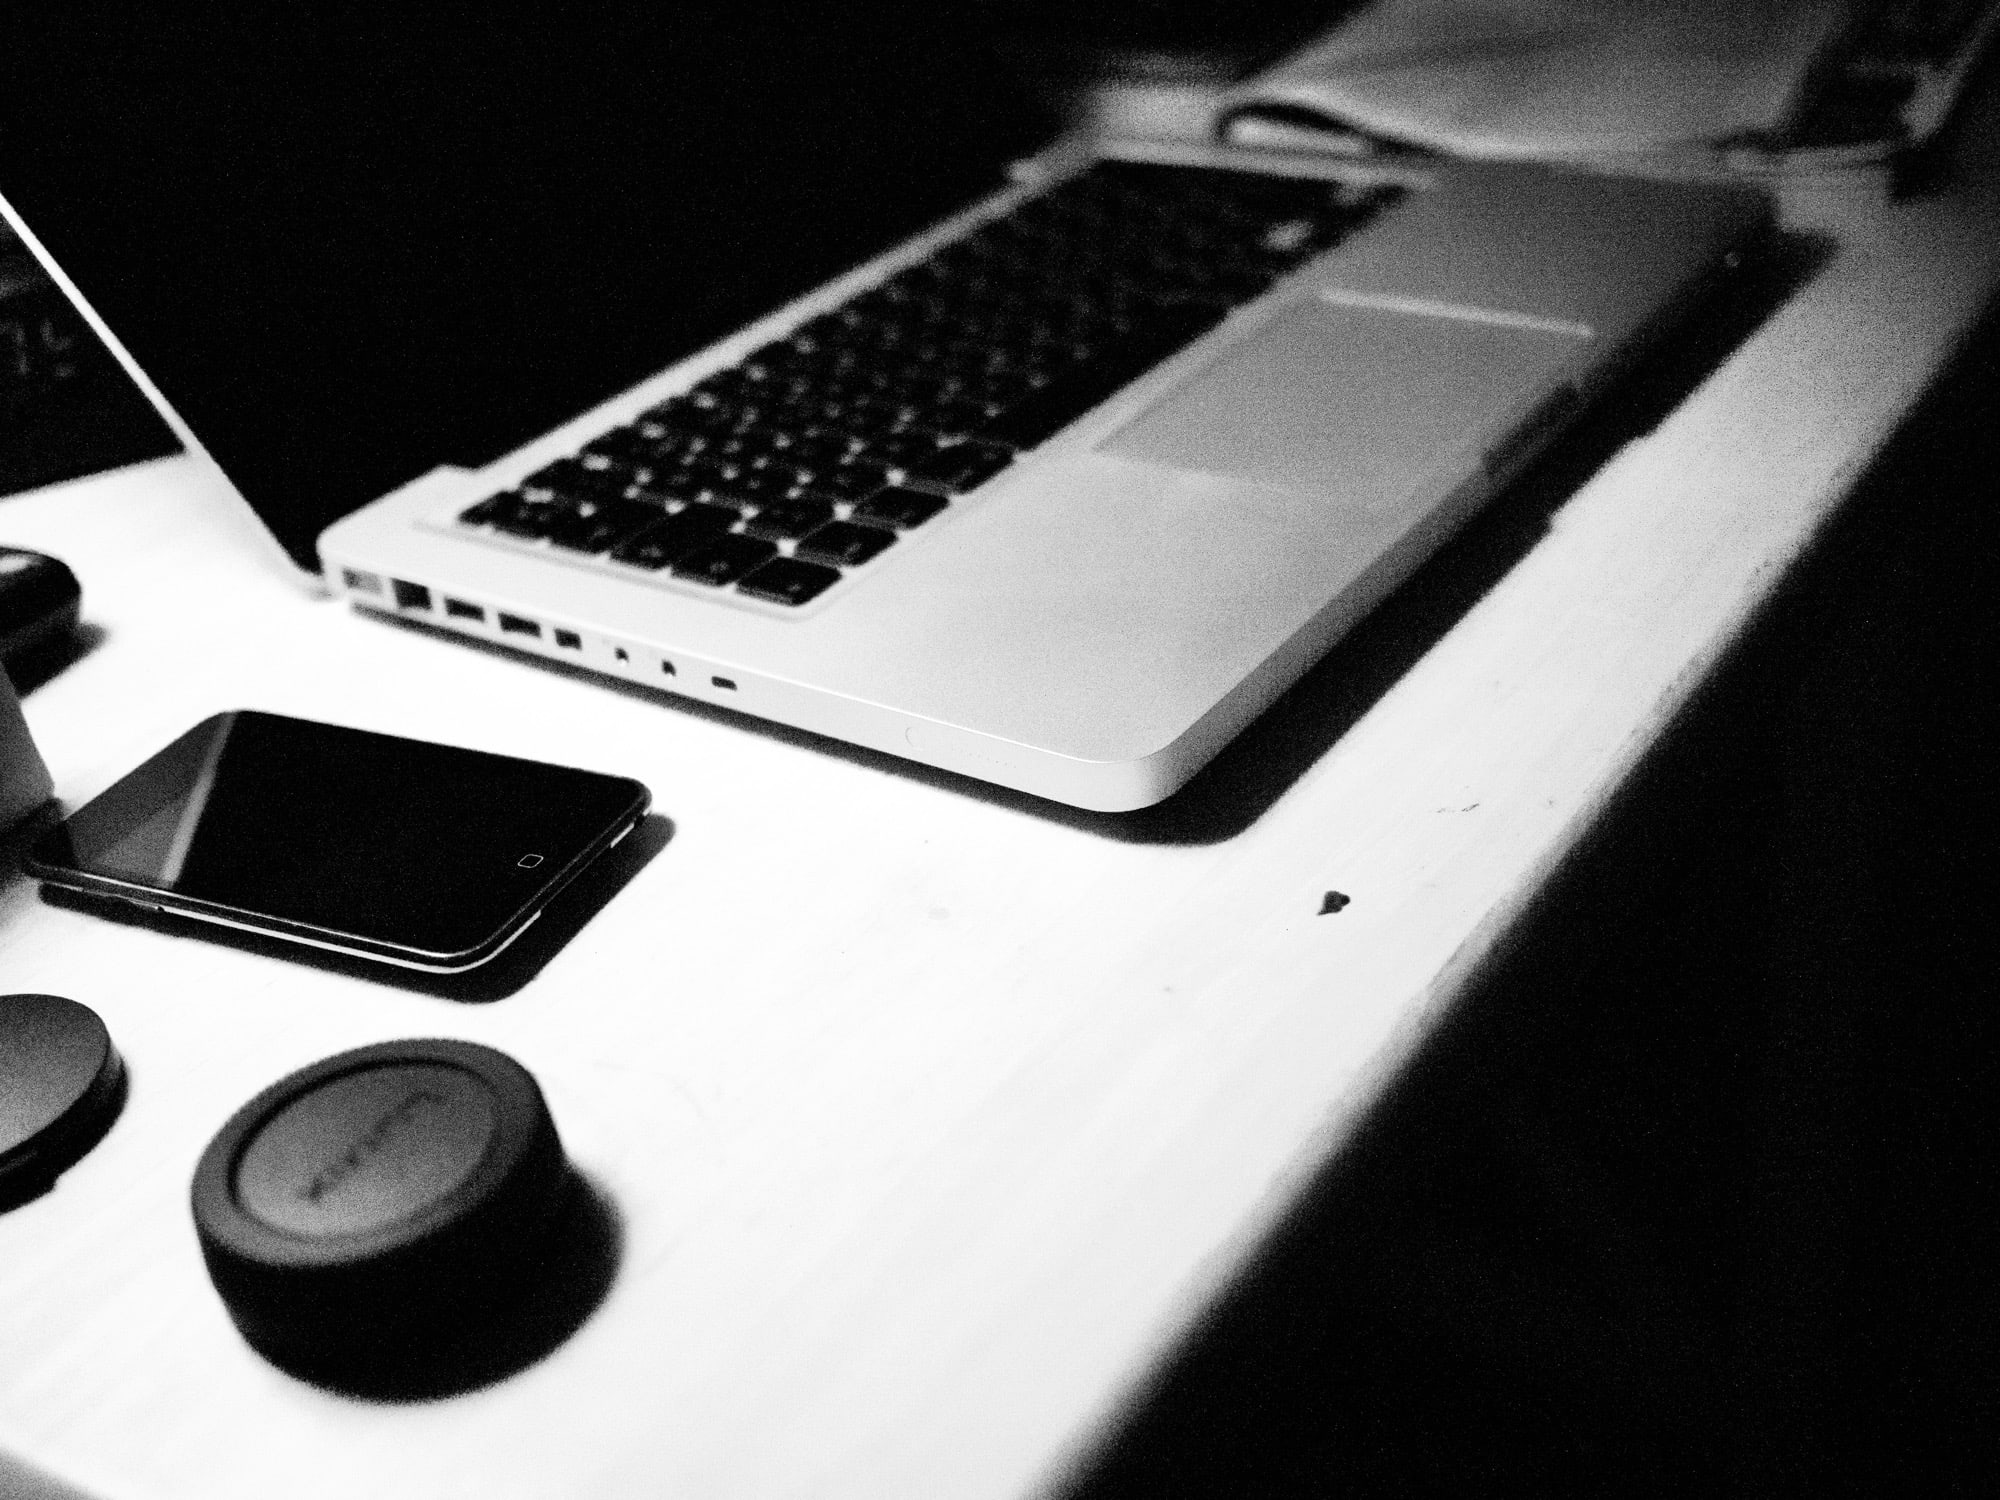 MacBook on desk